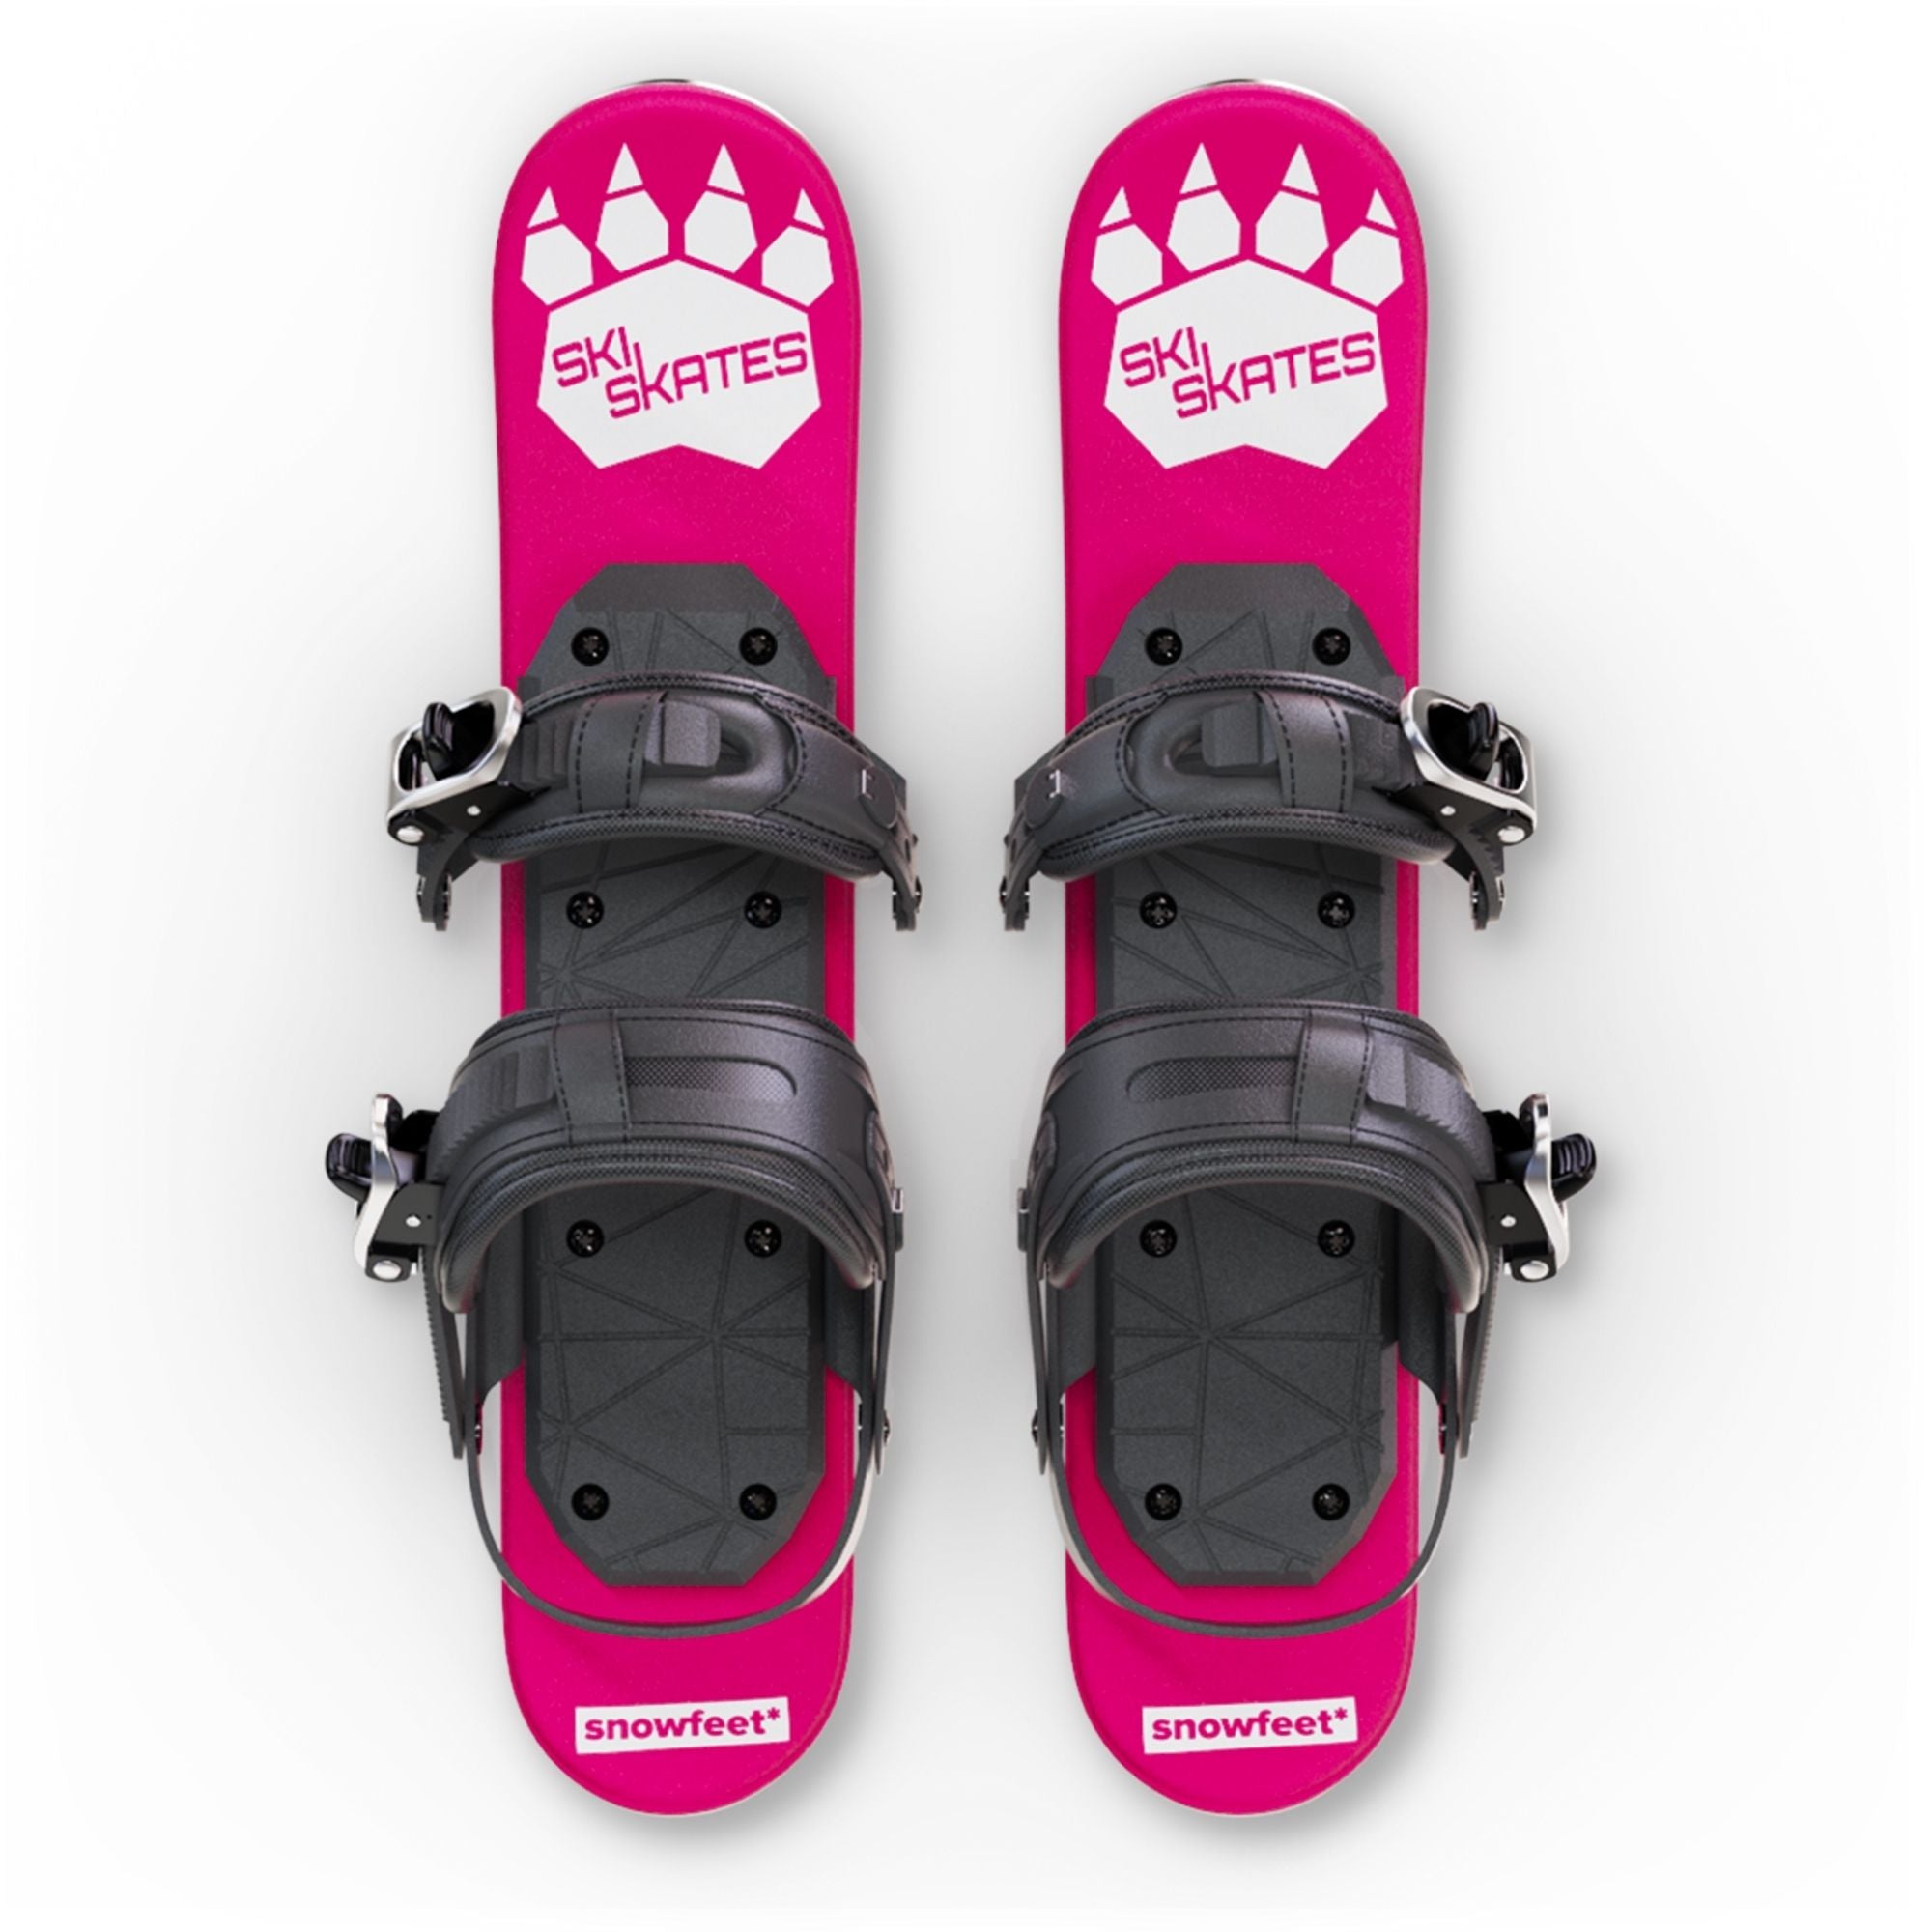 スキースケート [Skiskates]｜雪用スケート｜スキーブーツモデル